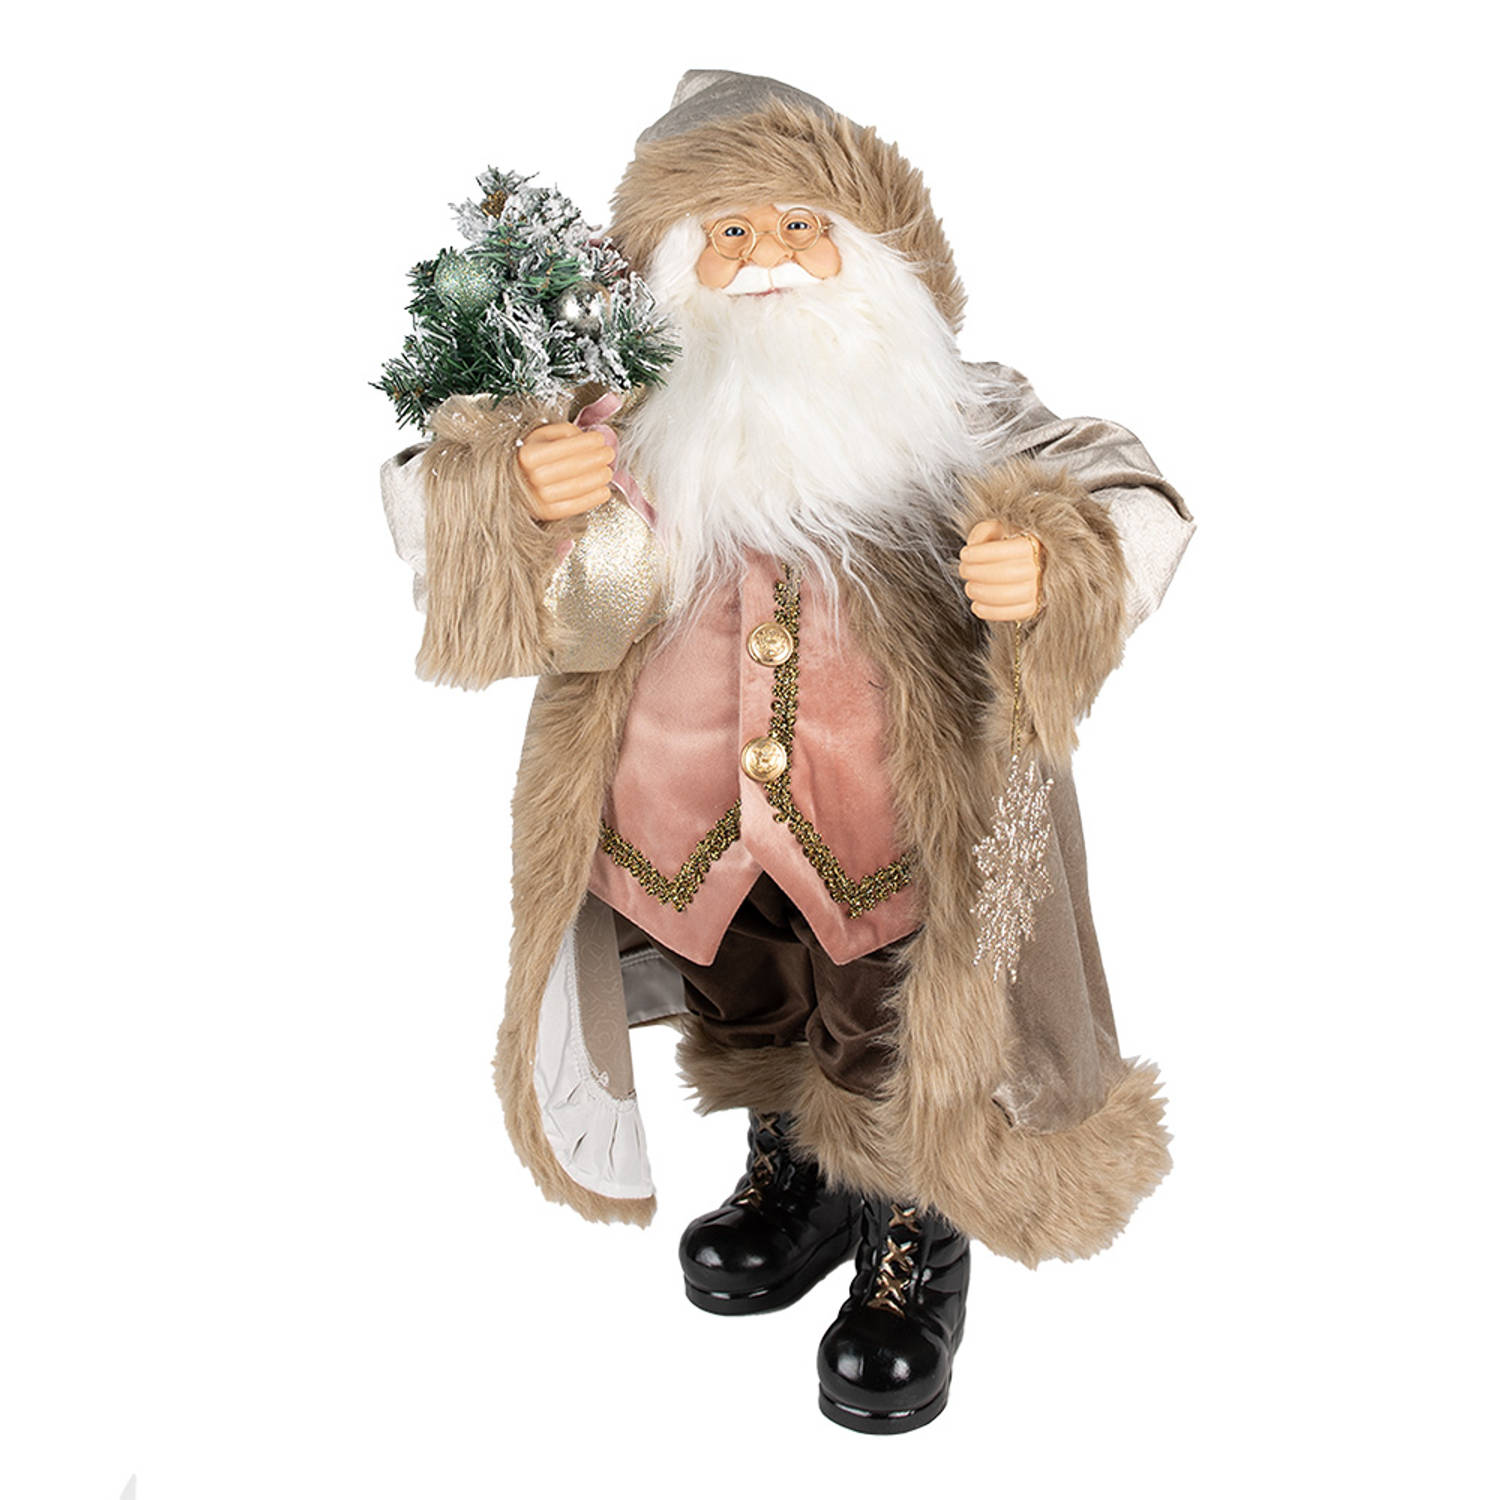 HAES DECO - Kerstman deco Figuur - Formaat 15x10x30 cm - Collectie: Traditional Santa - Kleur Beige - Materiaal Textiel op kunststof - Kerst Figuur, Kerstdecoratie